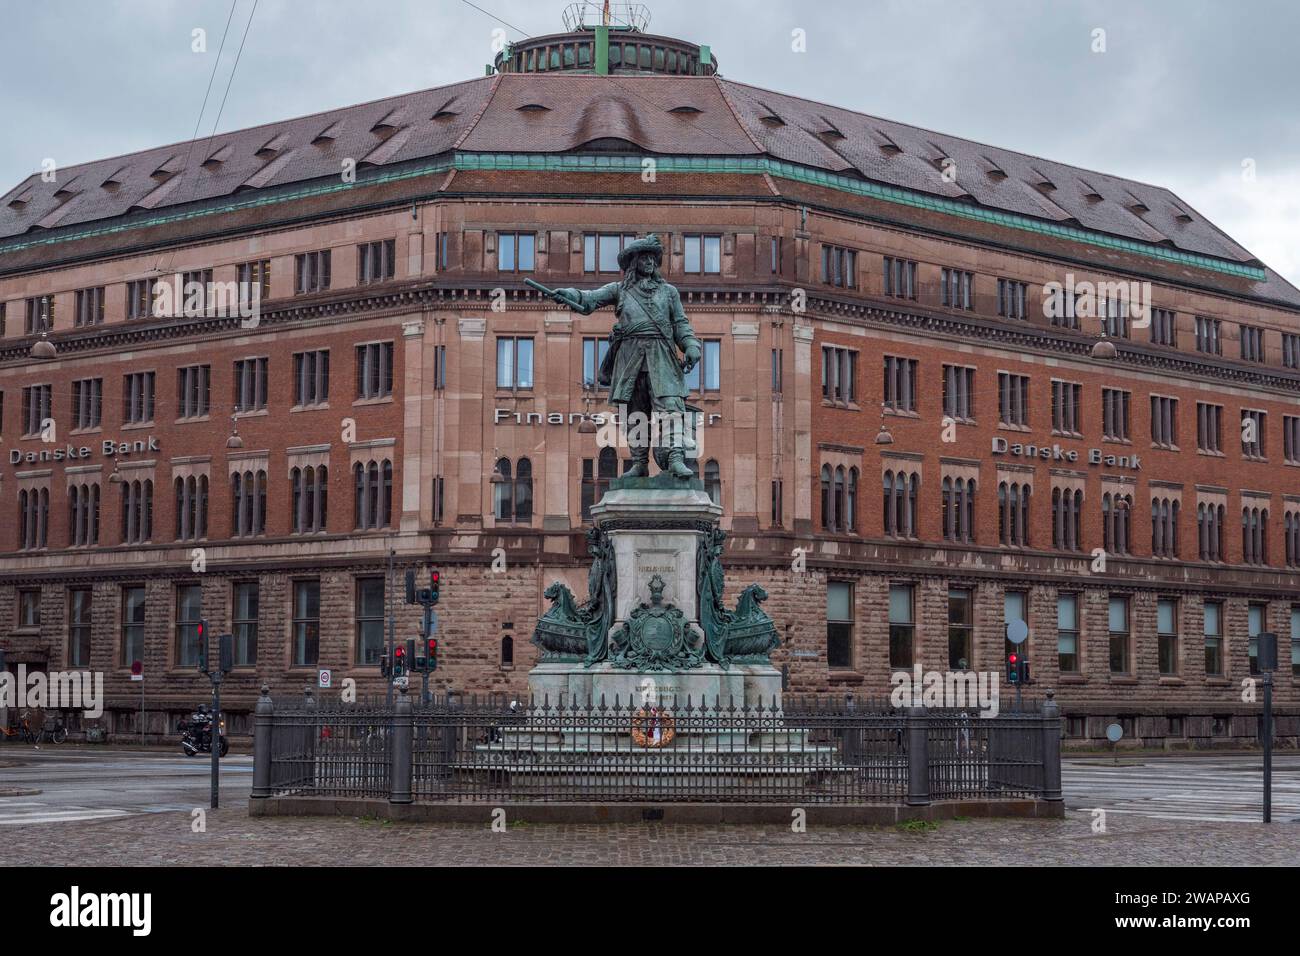 Statue de Niels Juel, créée par le sculpteur Theobald Stein, devant Danske Bank, Niels Juels Gade 7, Copenhague, Danemark. Banque D'Images